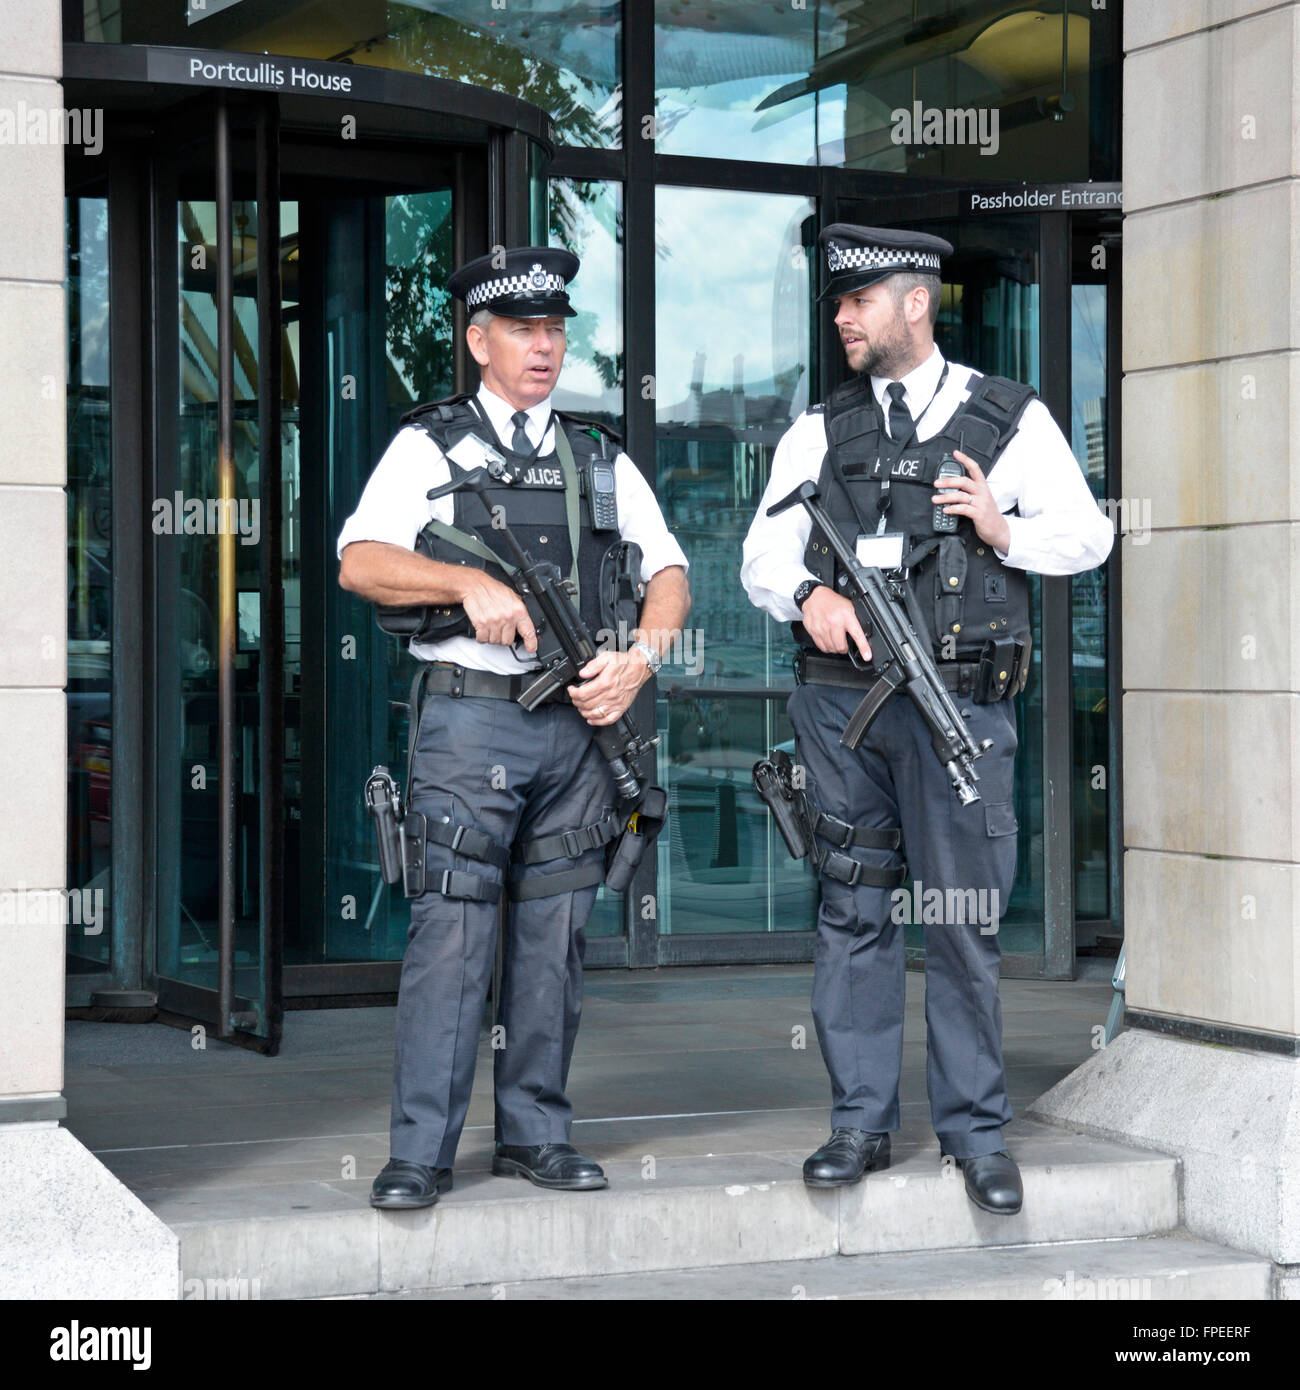 Regno Unito armati di polizia Metropolitan Police officer azienda armi visibili sul dovere all'entrata Portcullis House Casa del Parlamento Londra Inghilterra REGNO UNITO Foto Stock